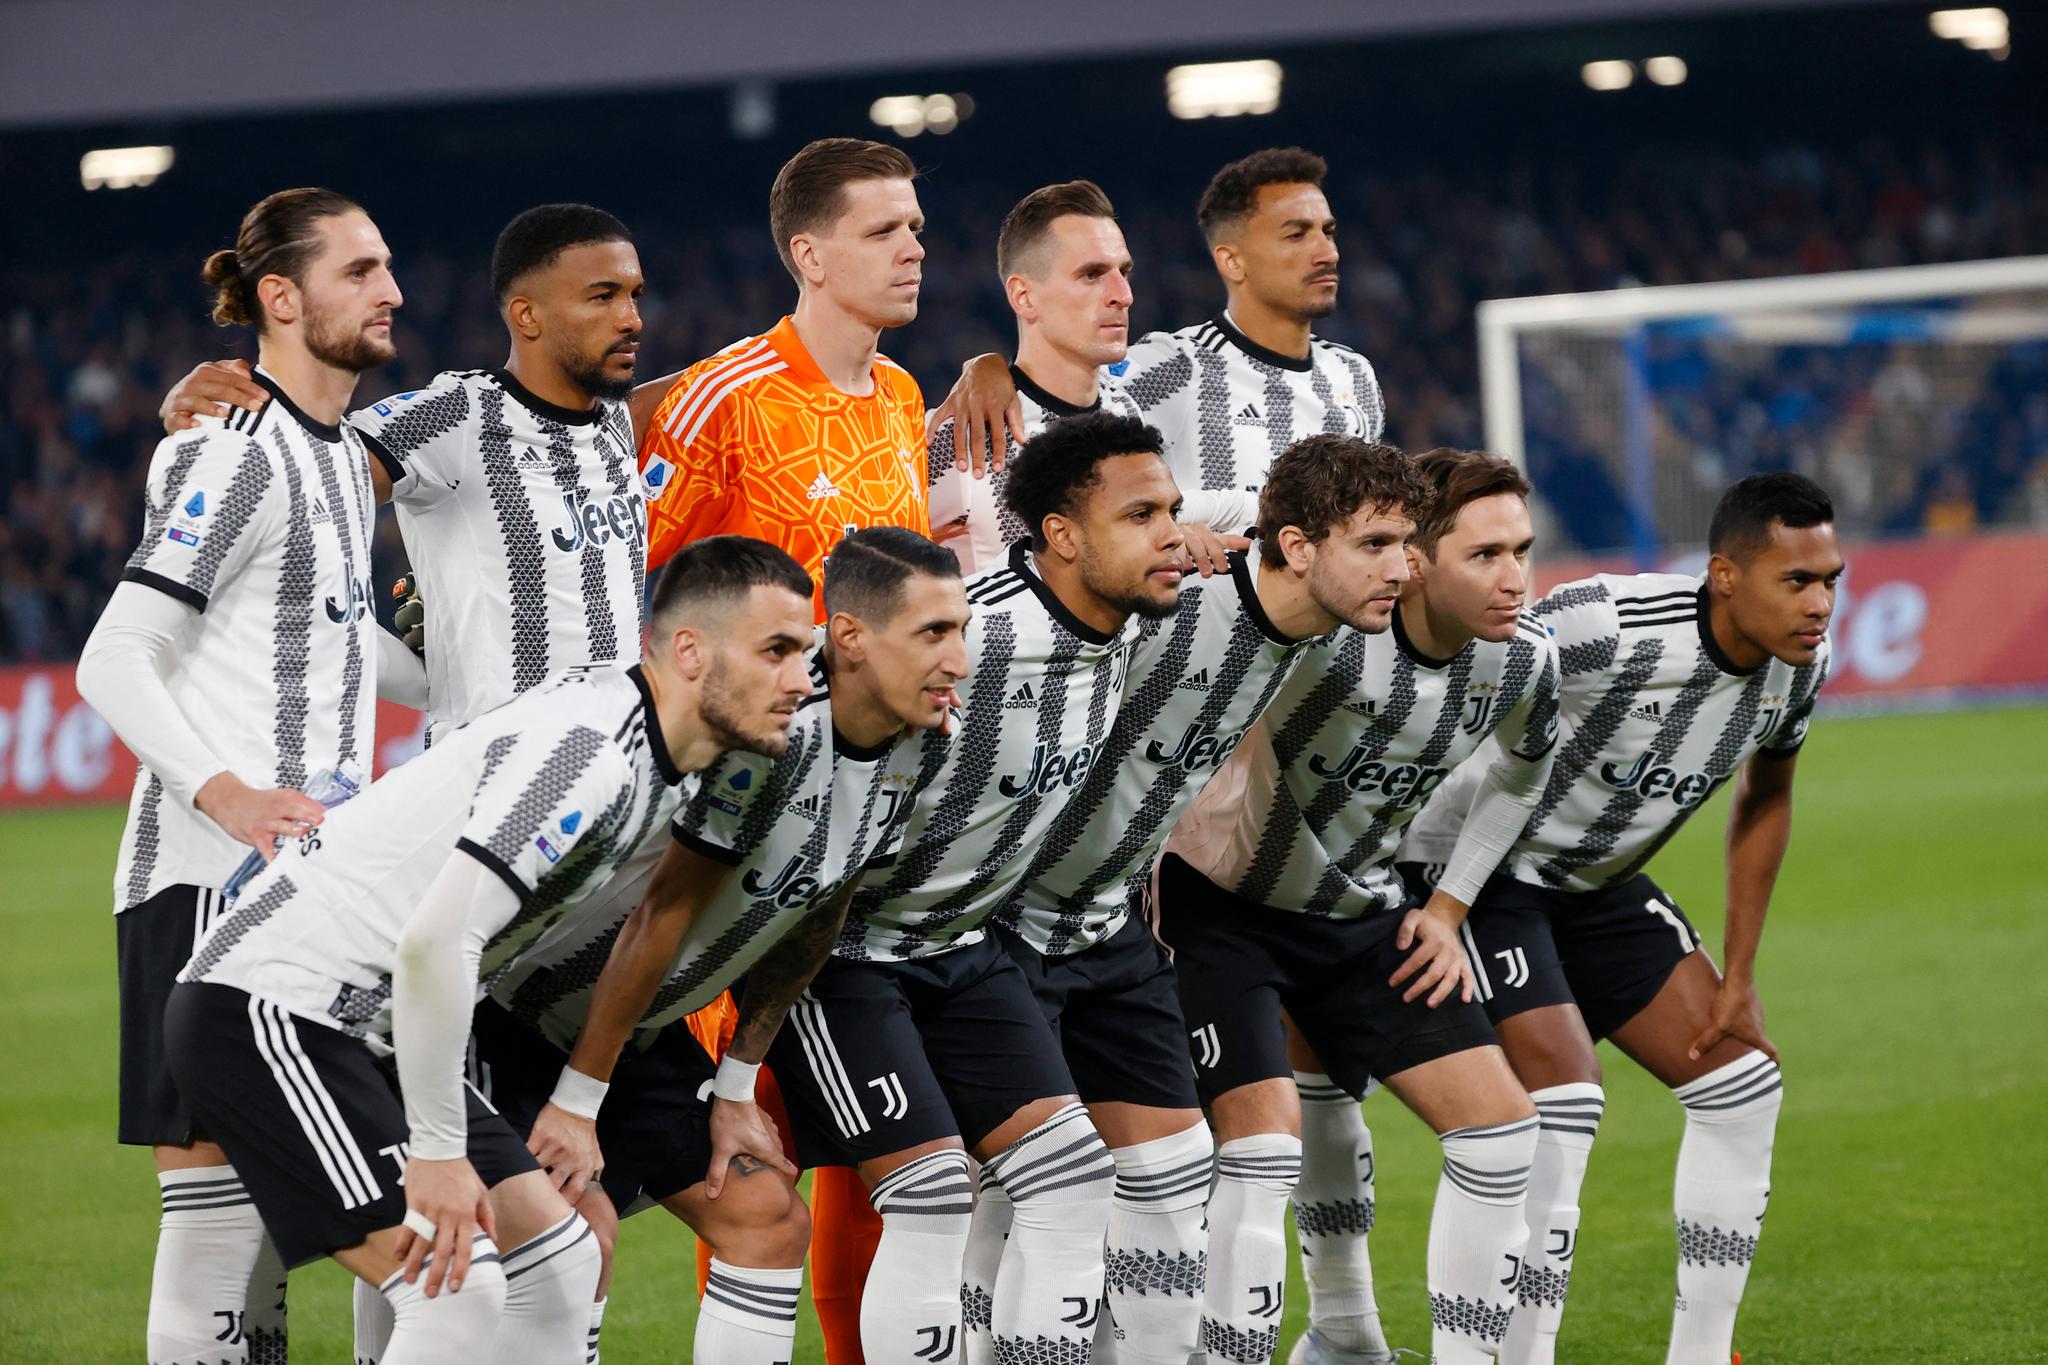 La Juventus è penalizzata di 15 punti – il club fa ricorso